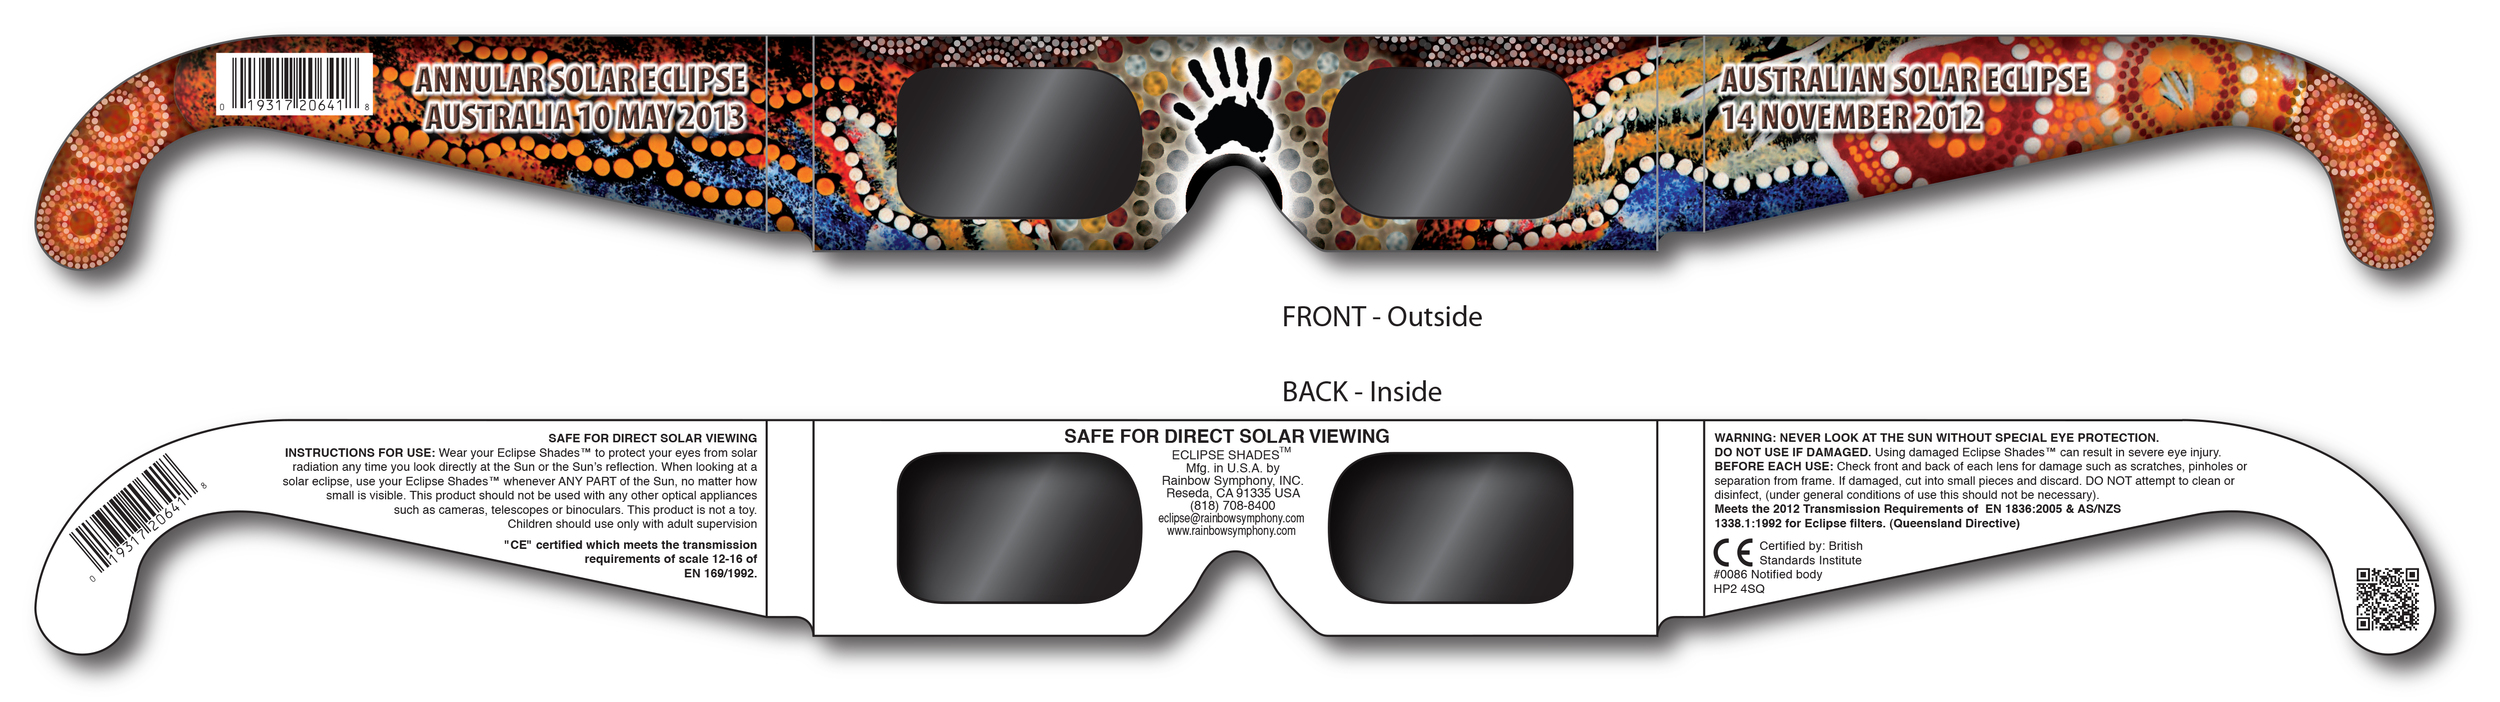 Eclipse Australia 2012 - Aboriginal Design